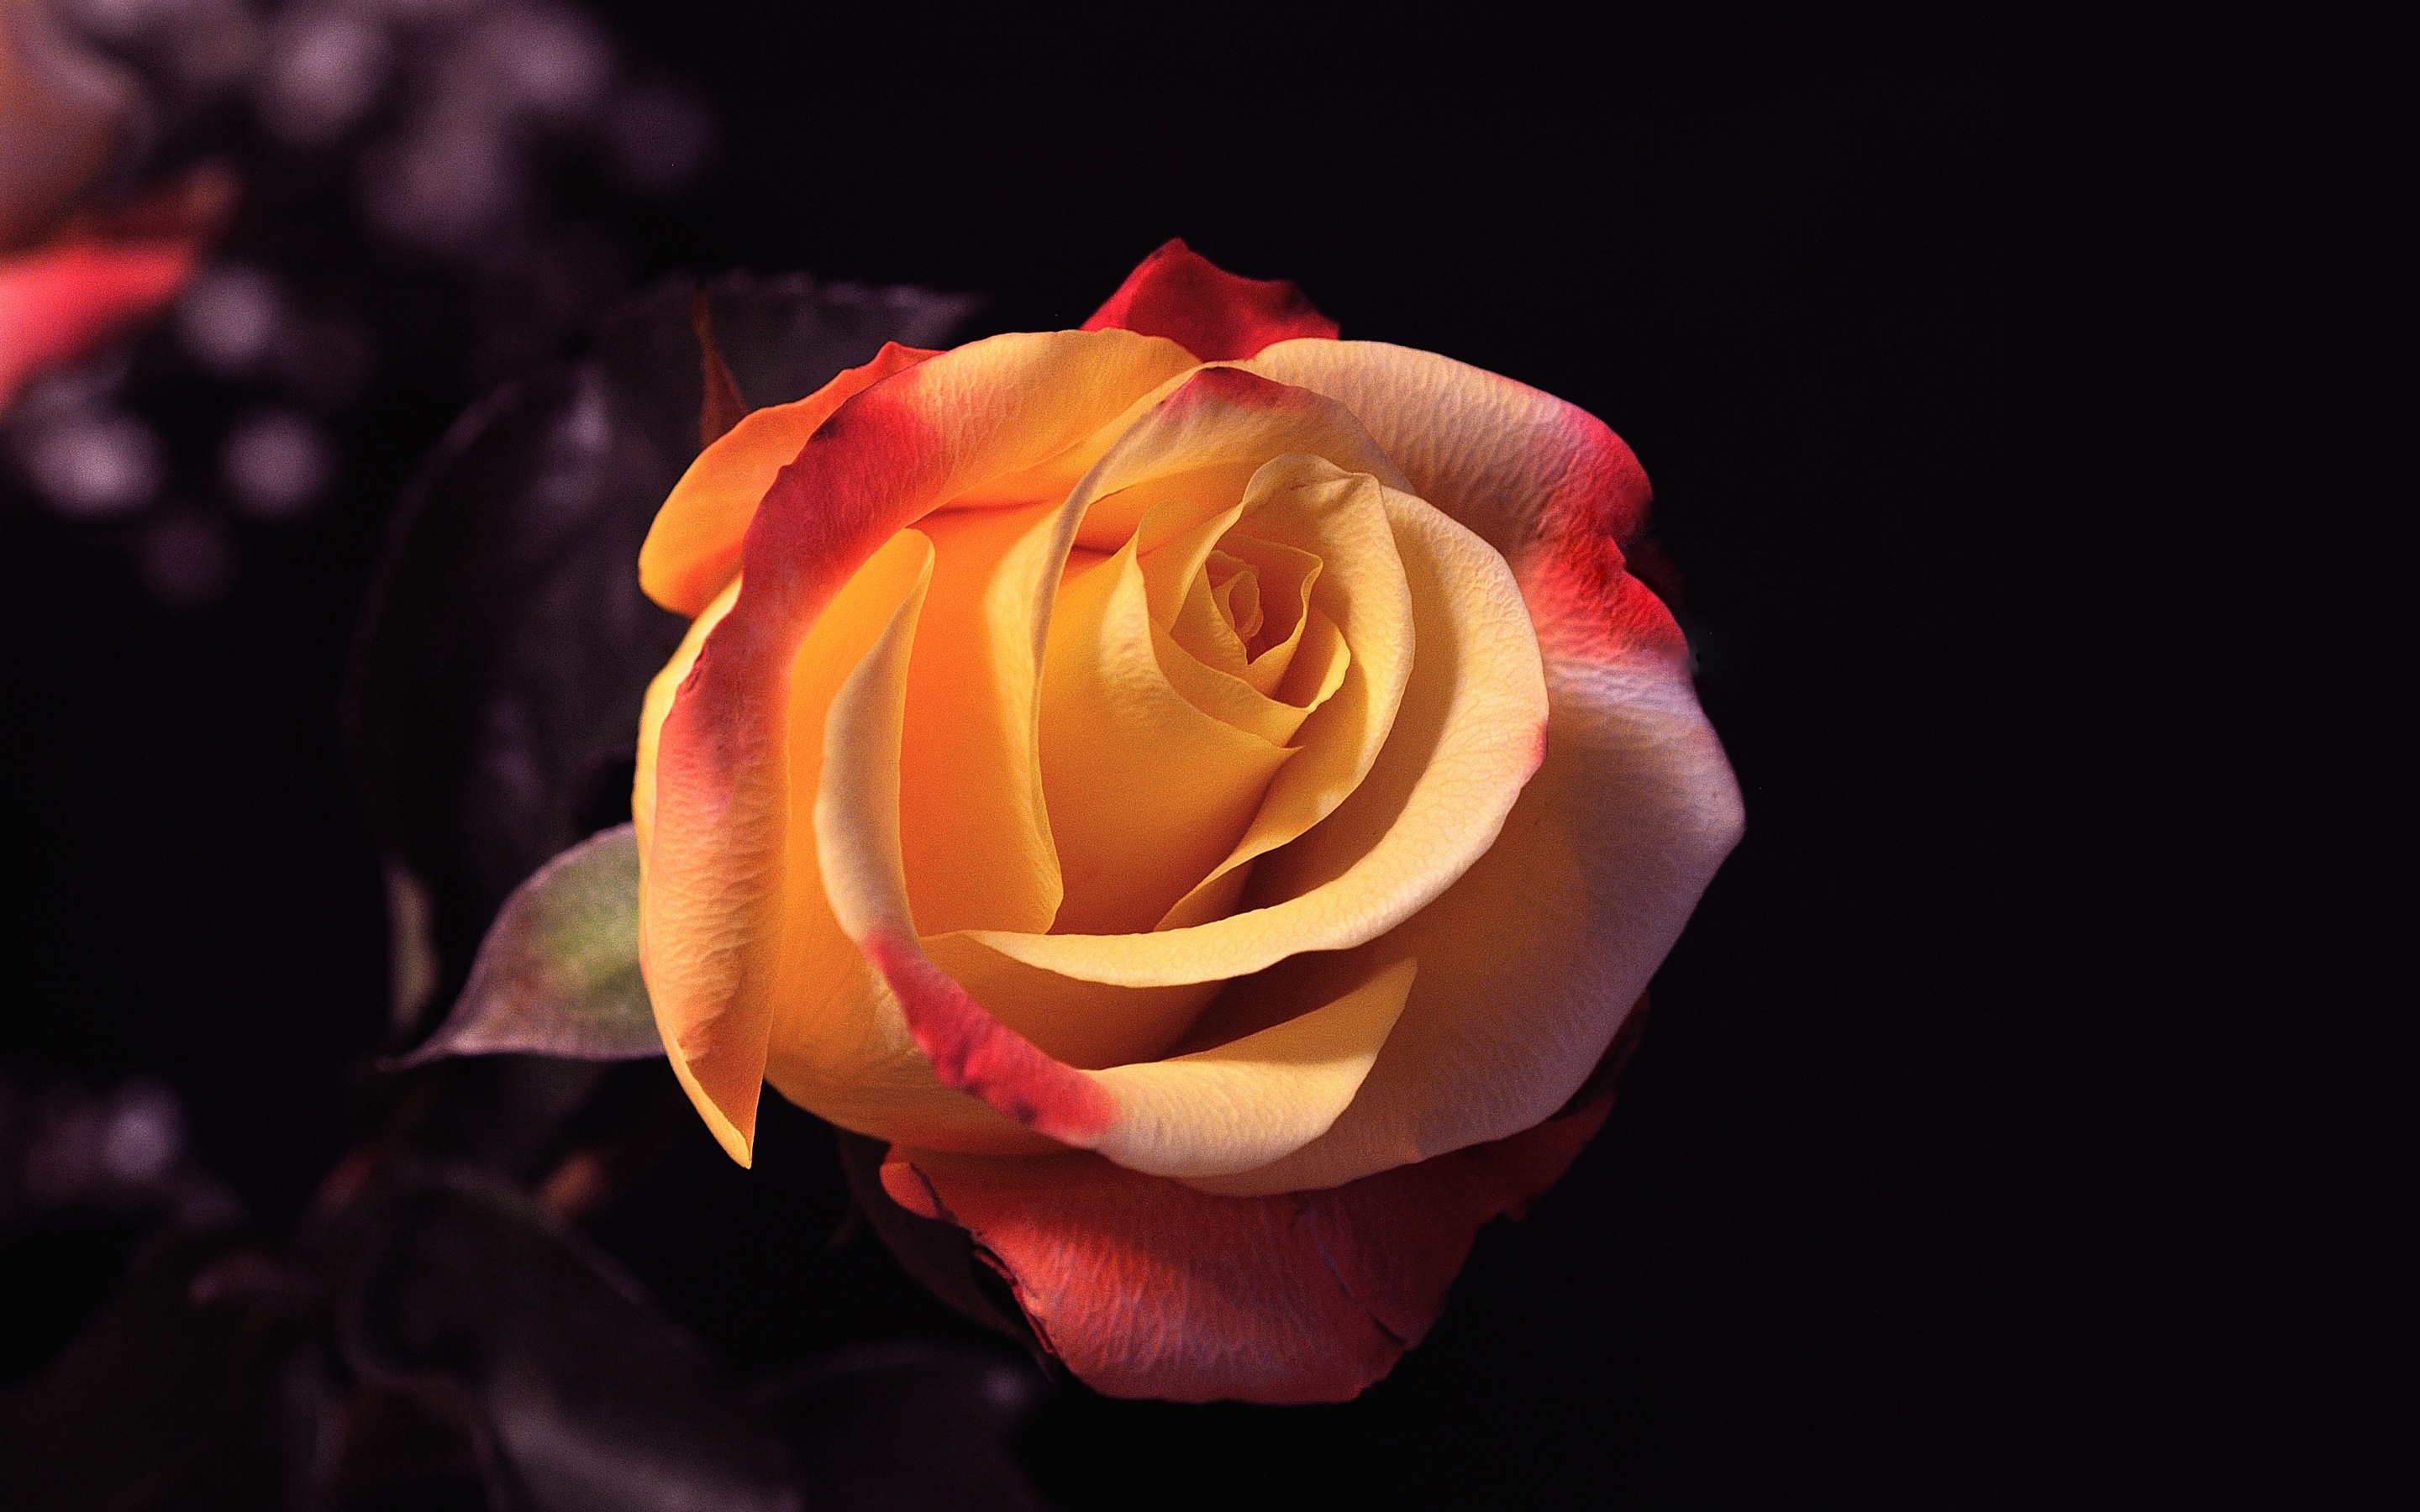 Rose is beautiful. Оранжевые розы. Красивые розы на черном фоне. Цветы на темном фоне. Розы на темном фоне.